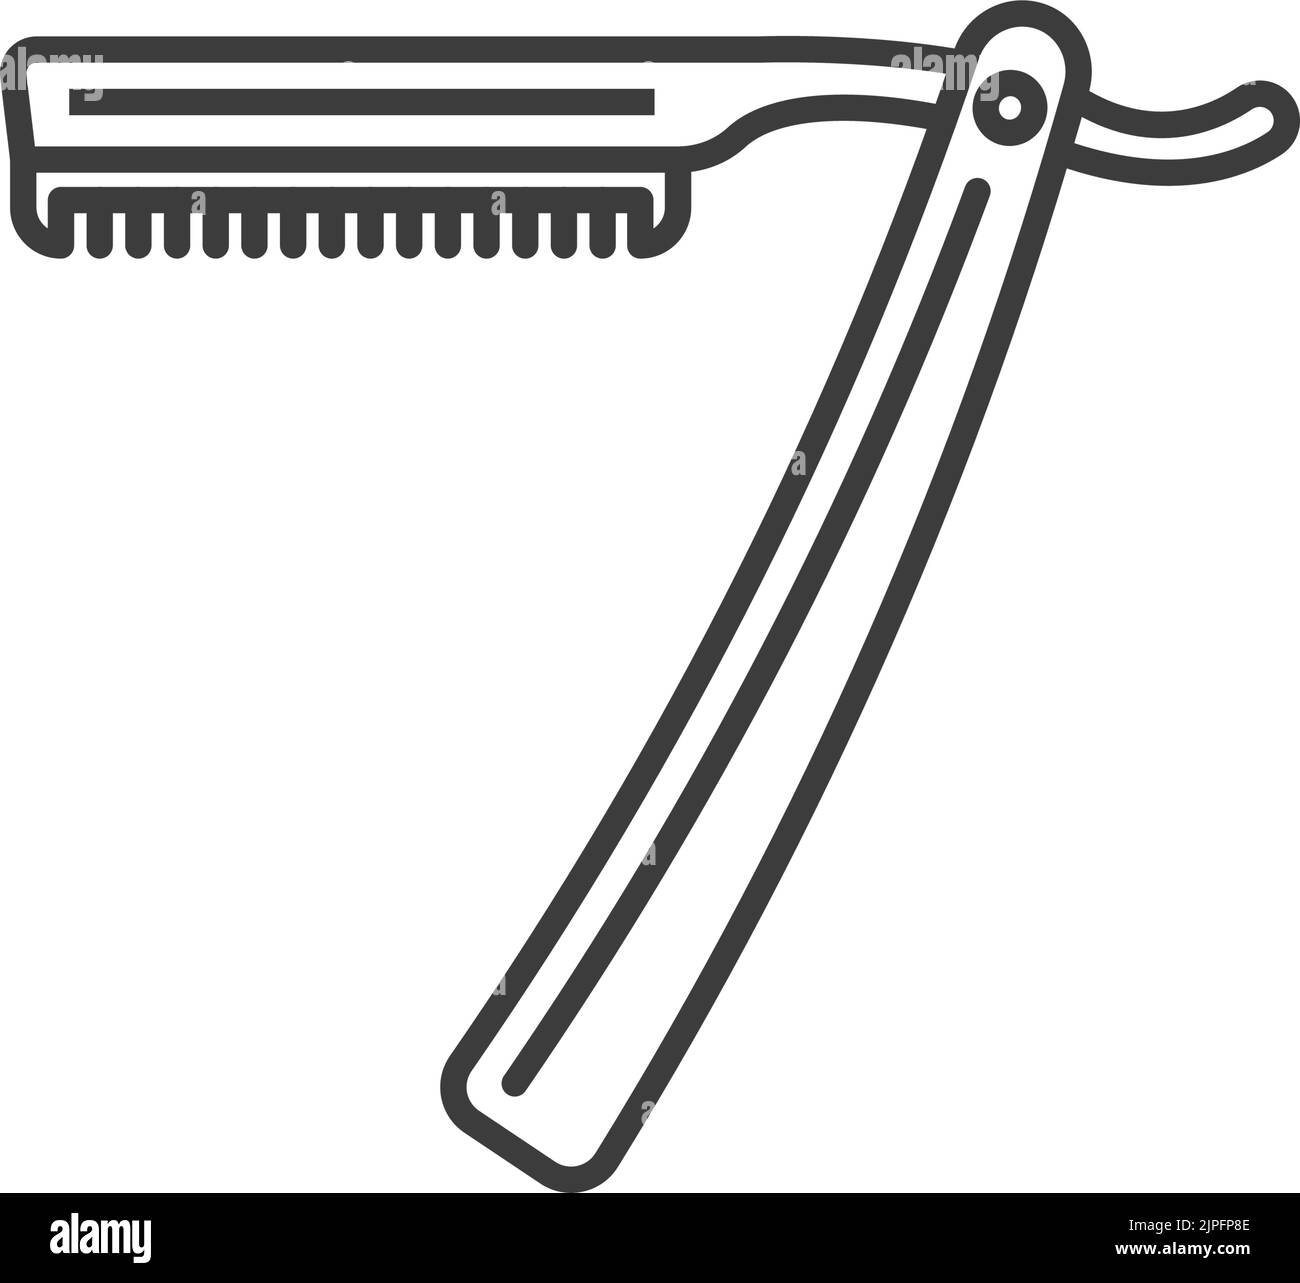 Cuchillo de afeitar Imágenes de stock en blanco y negro - Alamy